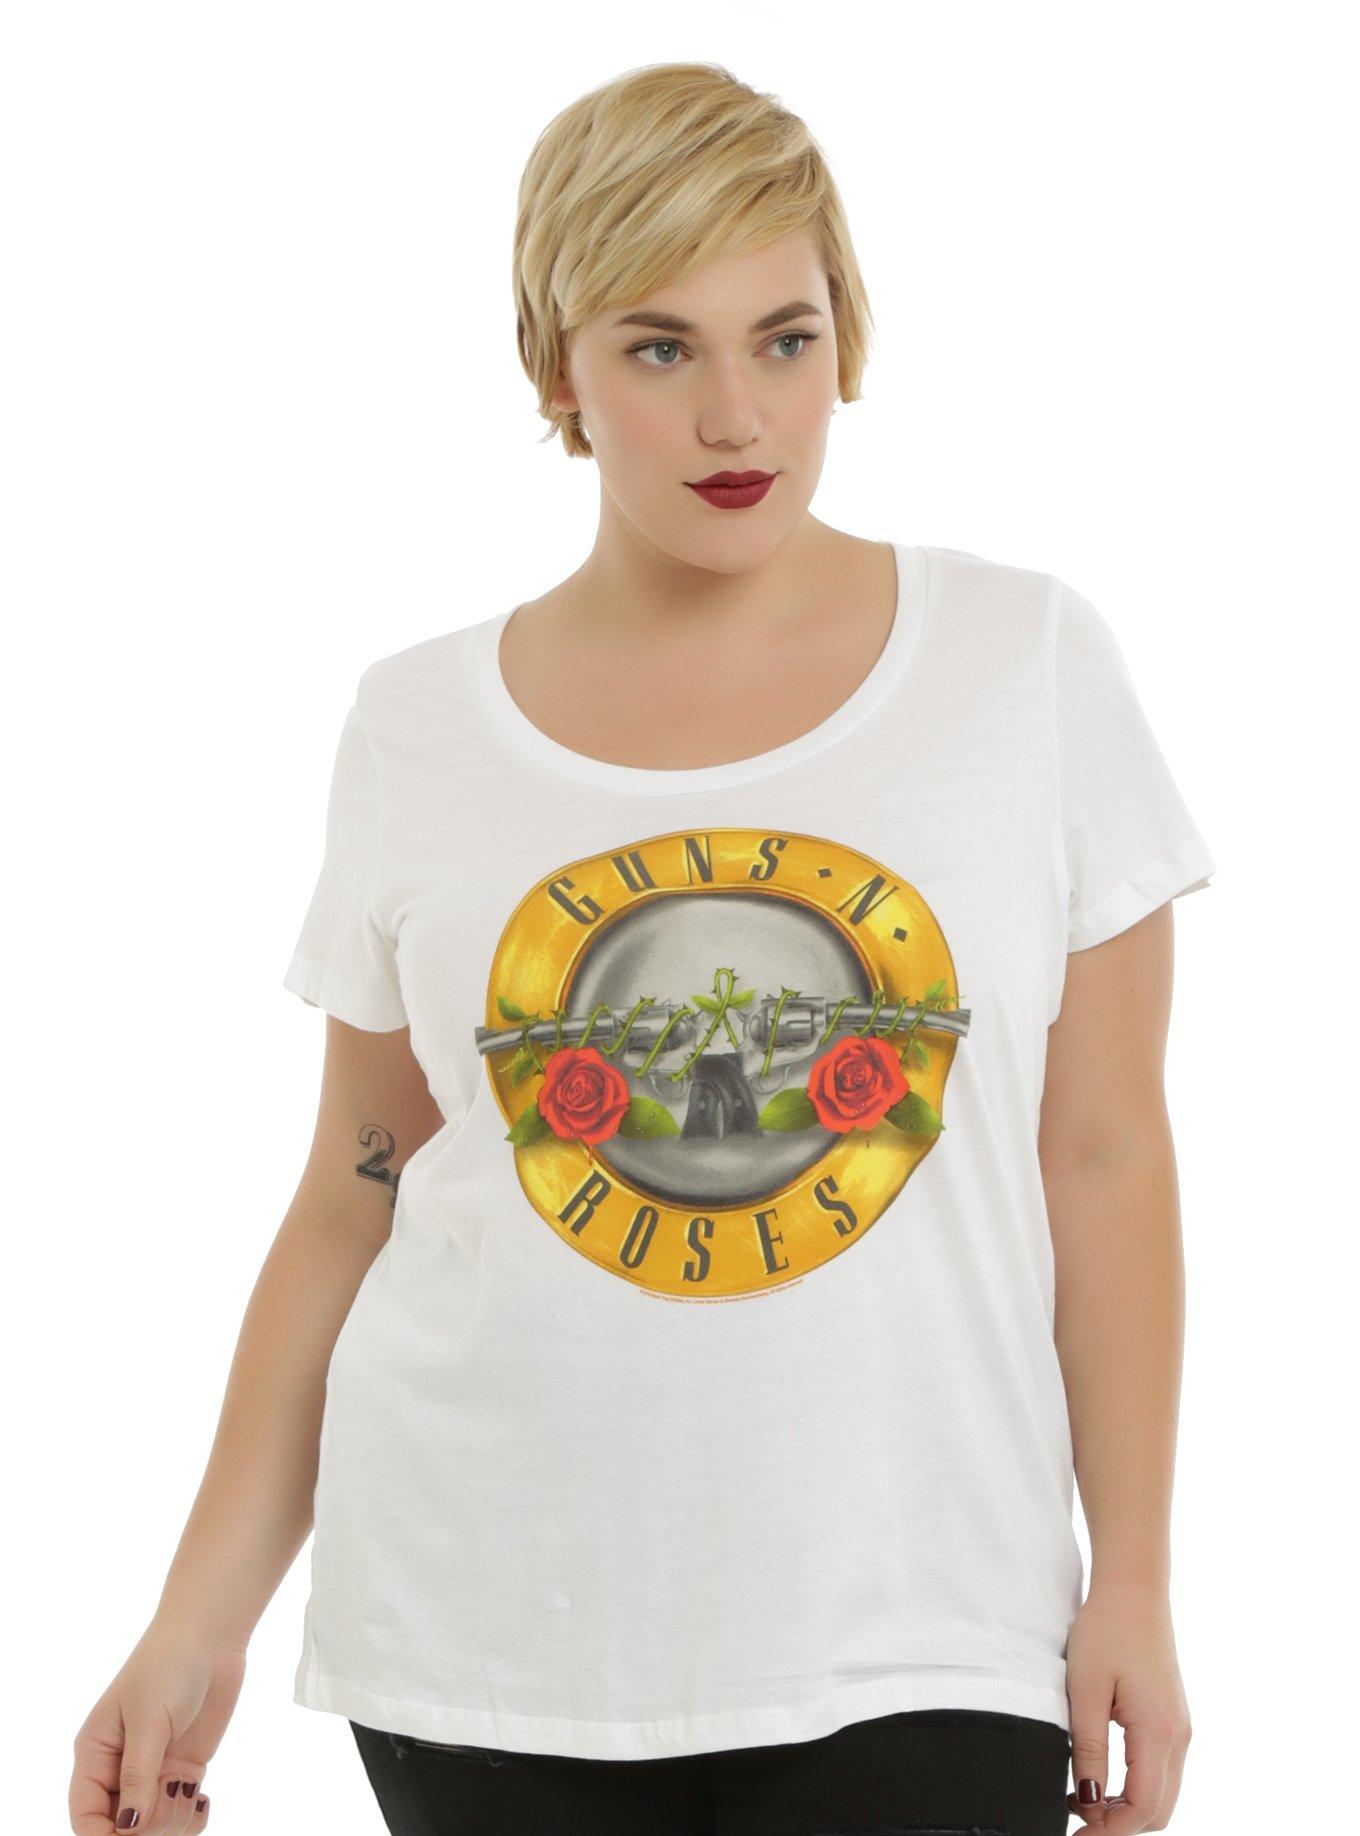 Guns N' Roses Logo Girls T-Shirt Plus Size, BLACK, hi-res